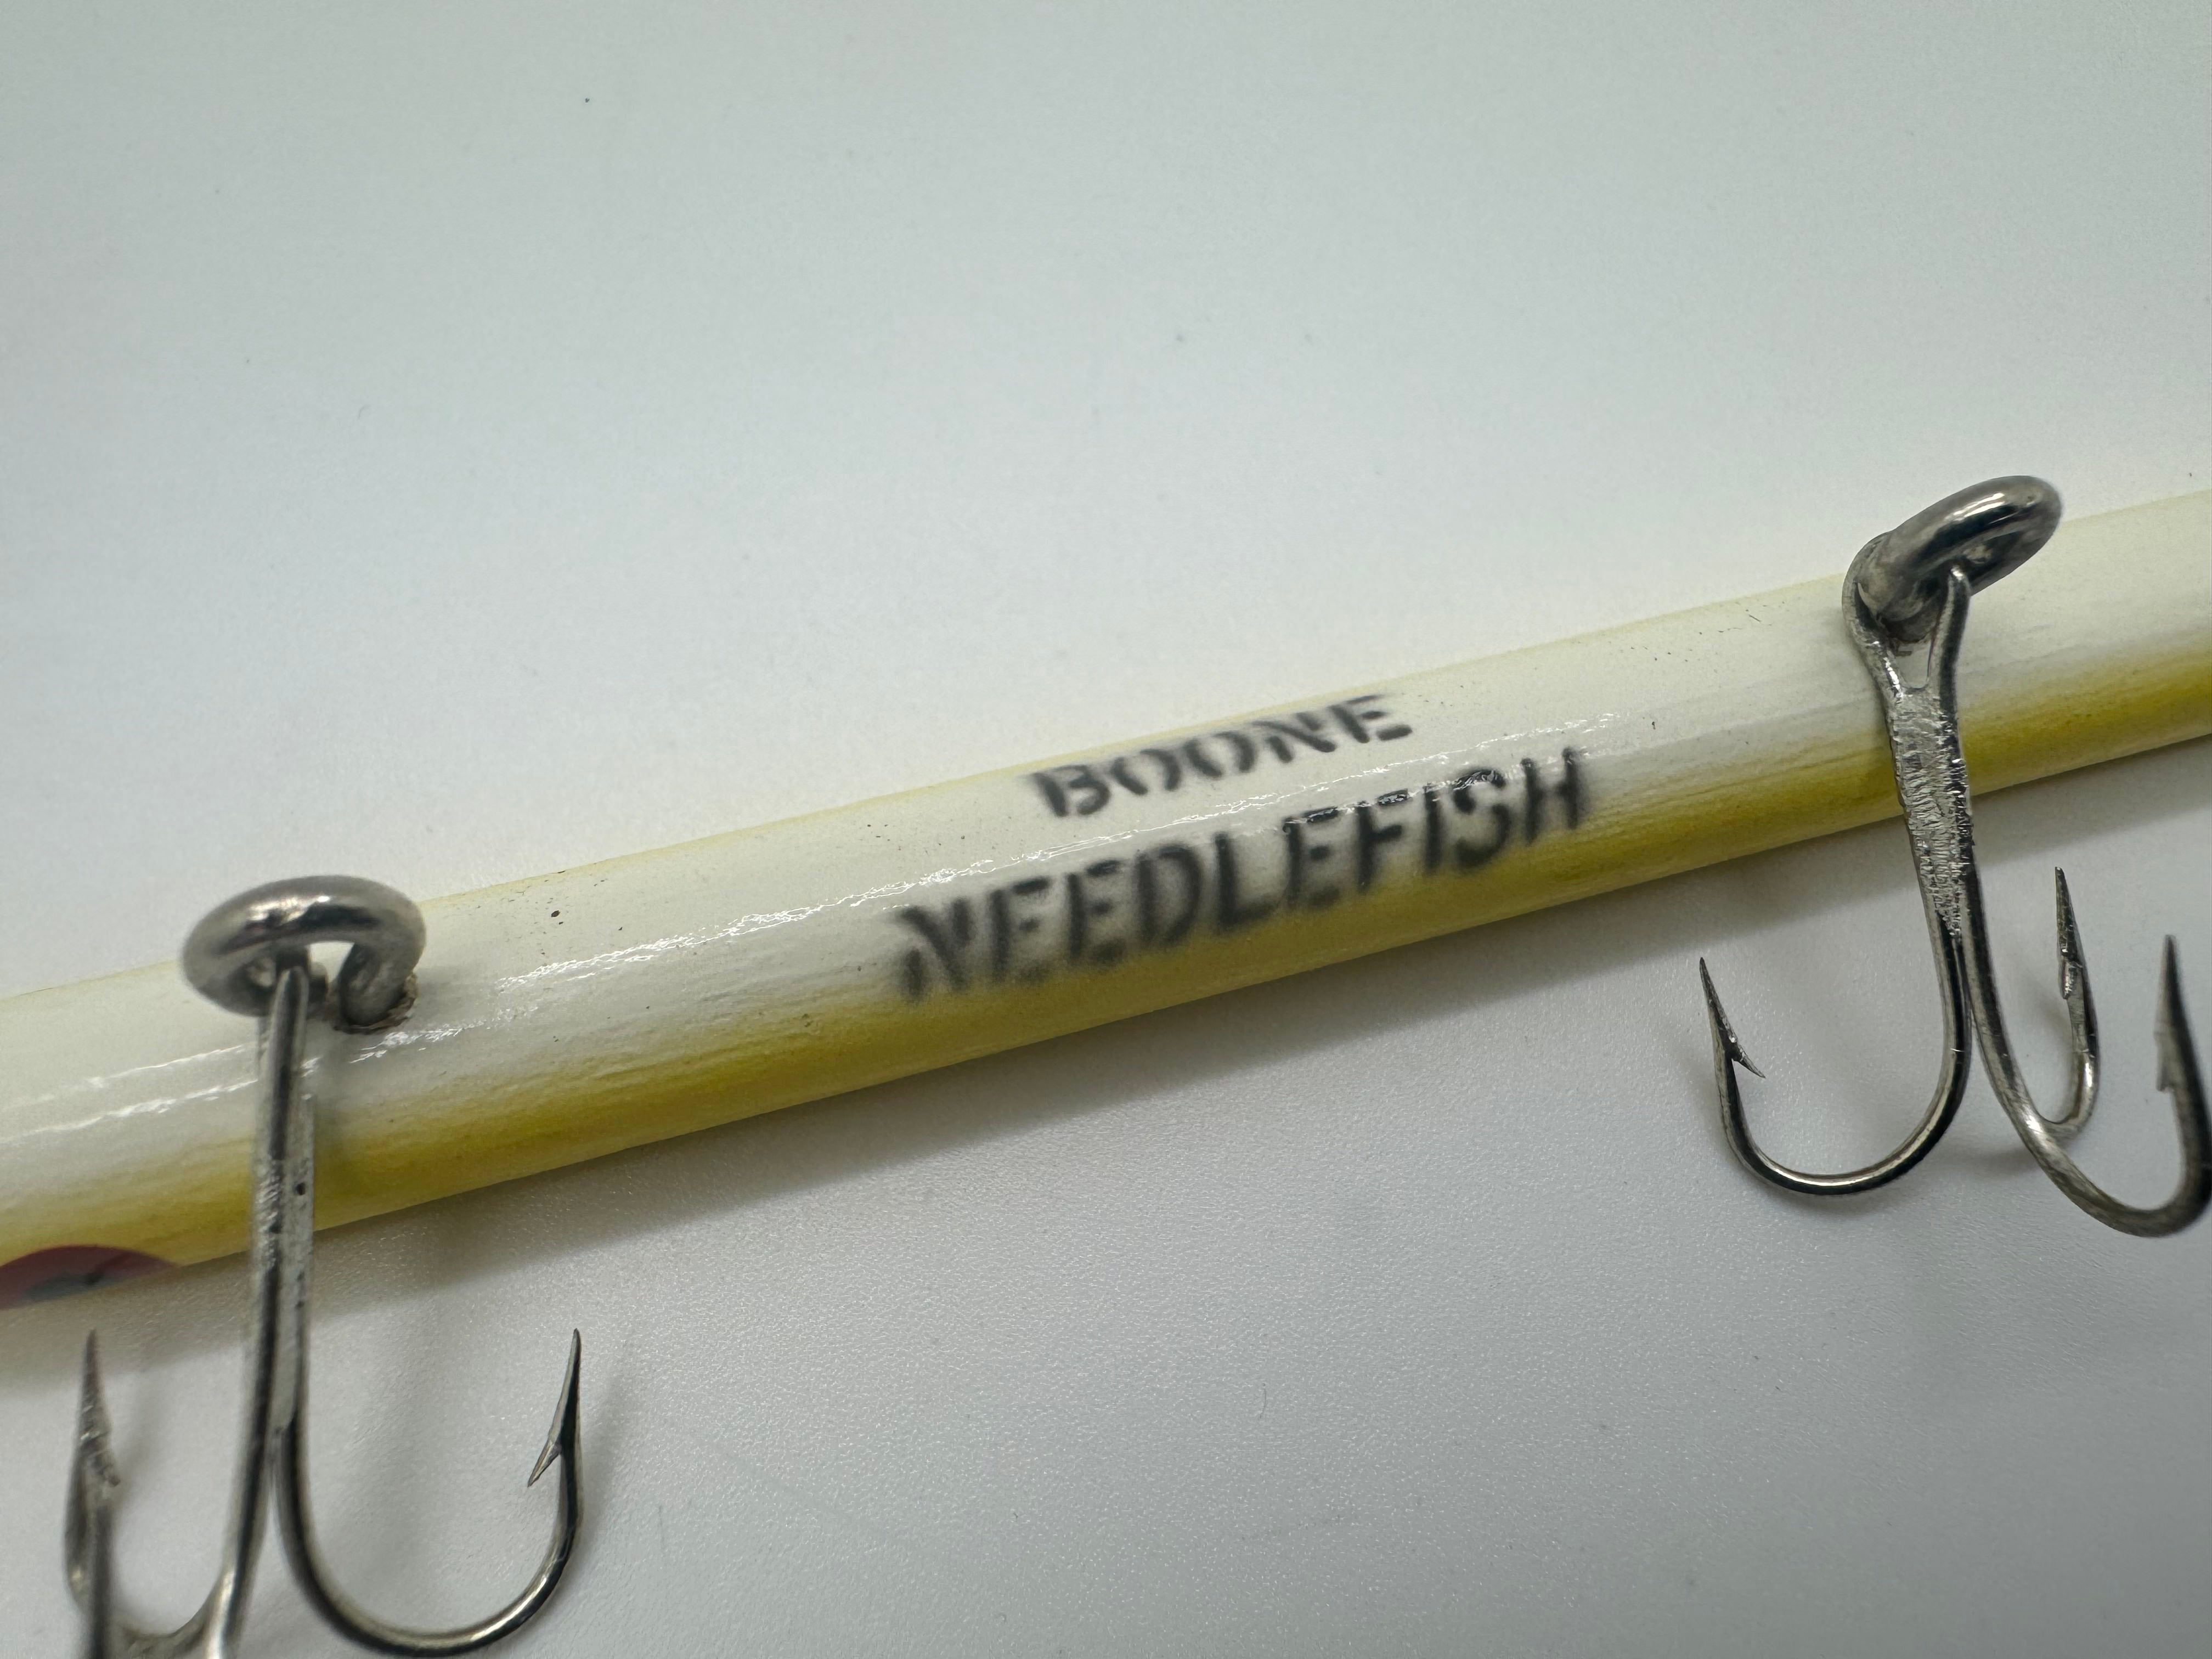 Boone 7000 Series 5 1/4" Needlefish, Yellow